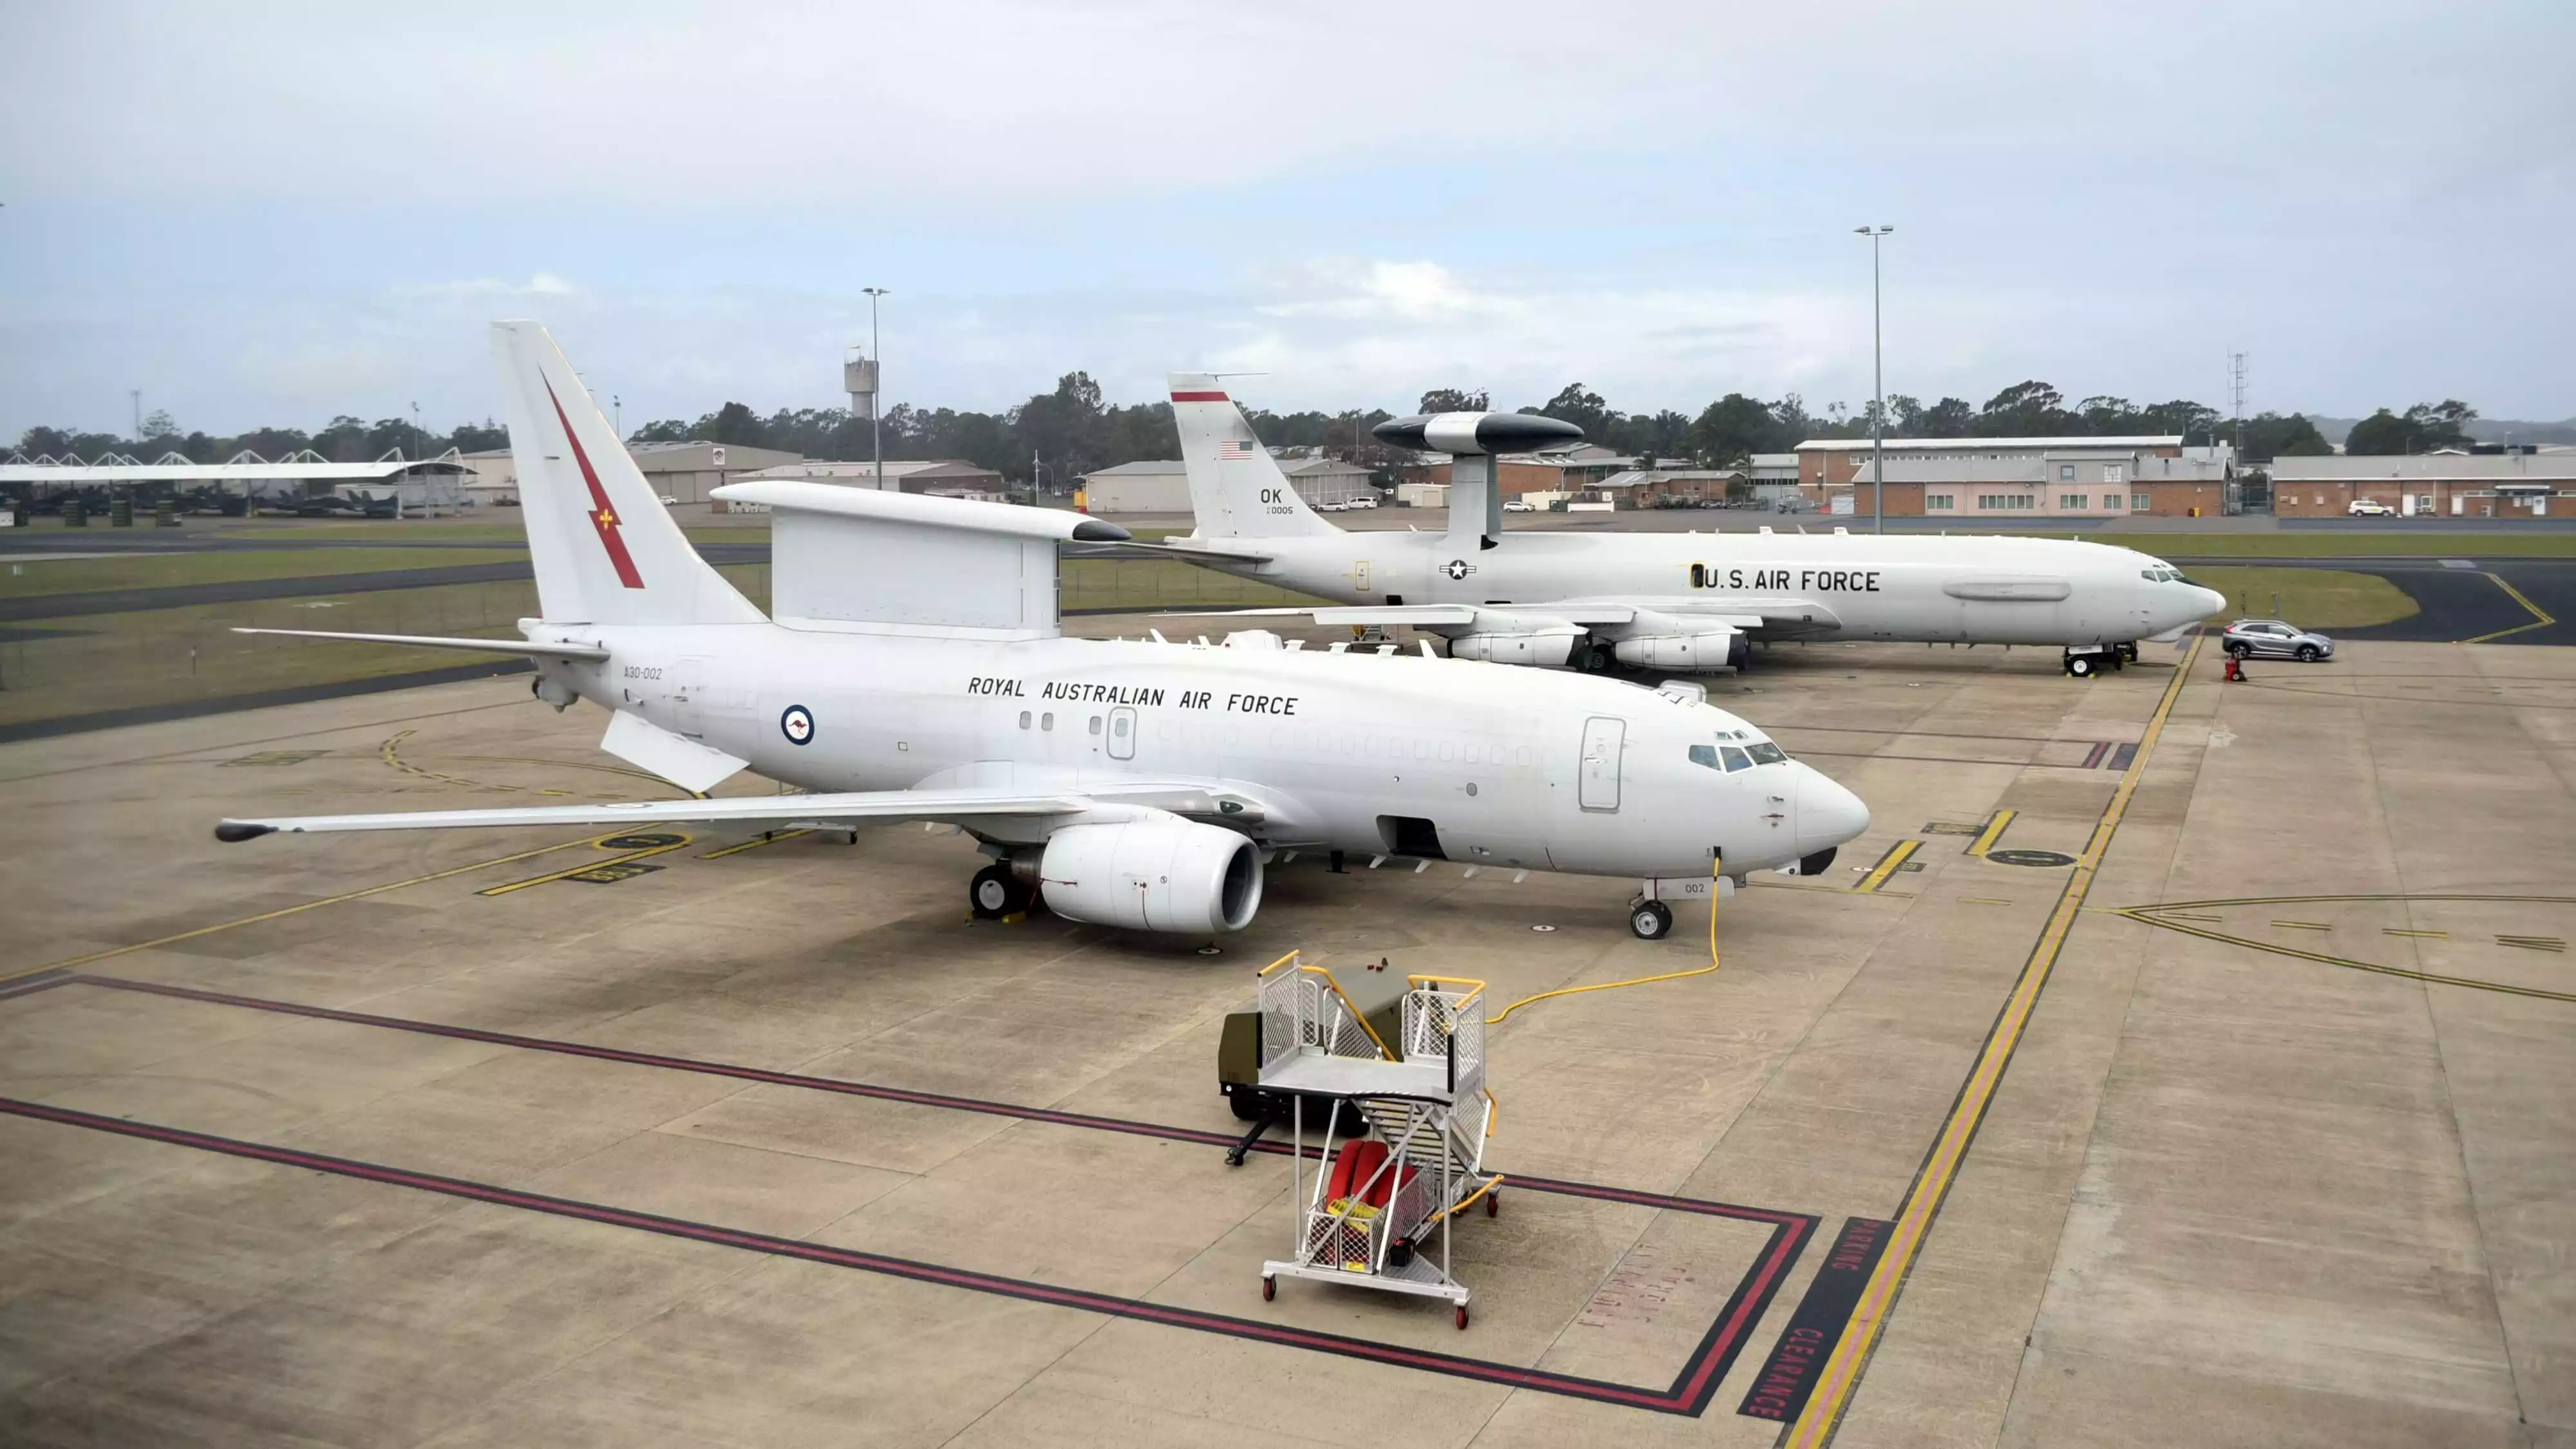 E-7A Wedgetail de la RAAF et un E-3 Sentry de l'USAF.